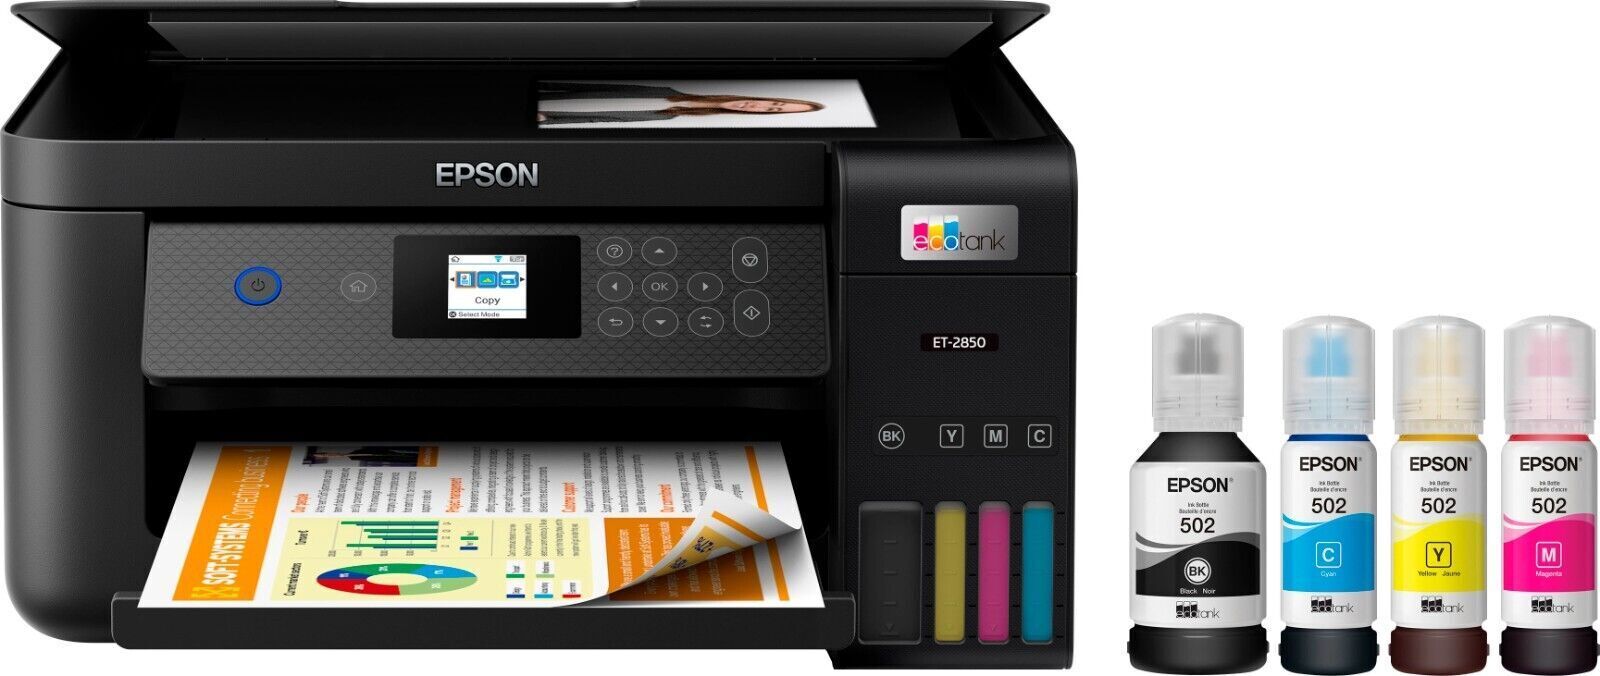 Epson EcoTank ET-2850 Color Inkjet All-In-One Printer - Black